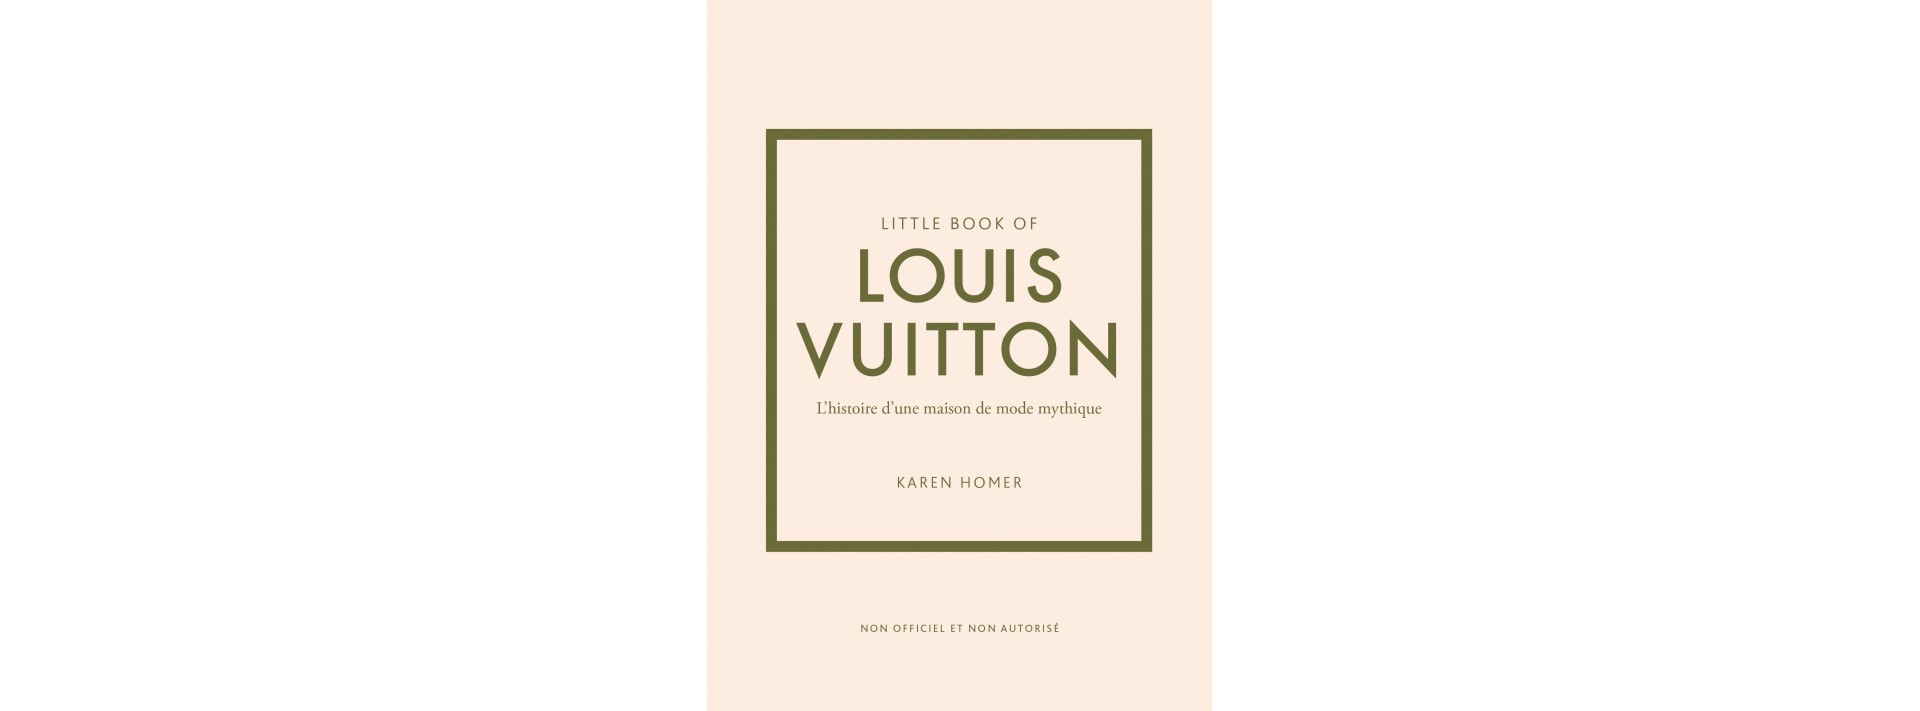 Little Book of Louis Vuitton - Version Française